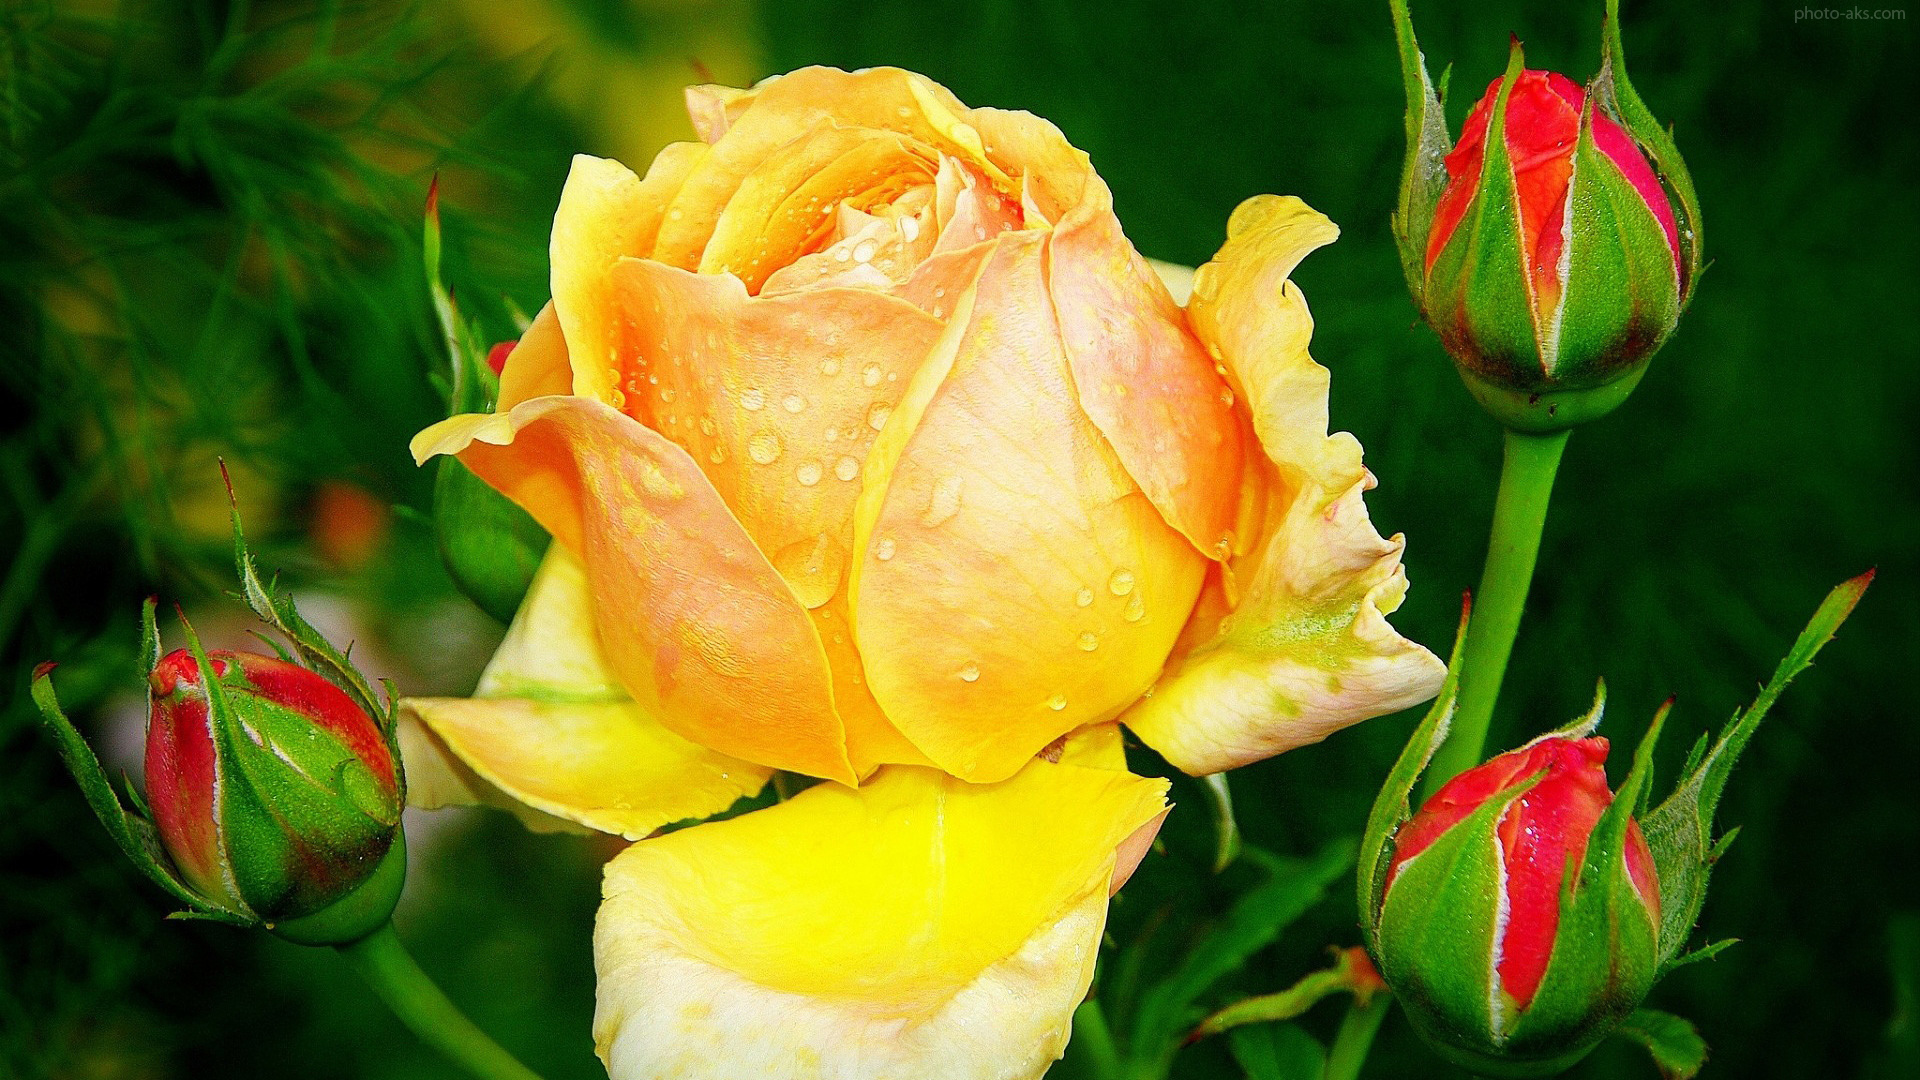 گل رز زرد زیبا، گل ها - عکس گل رز